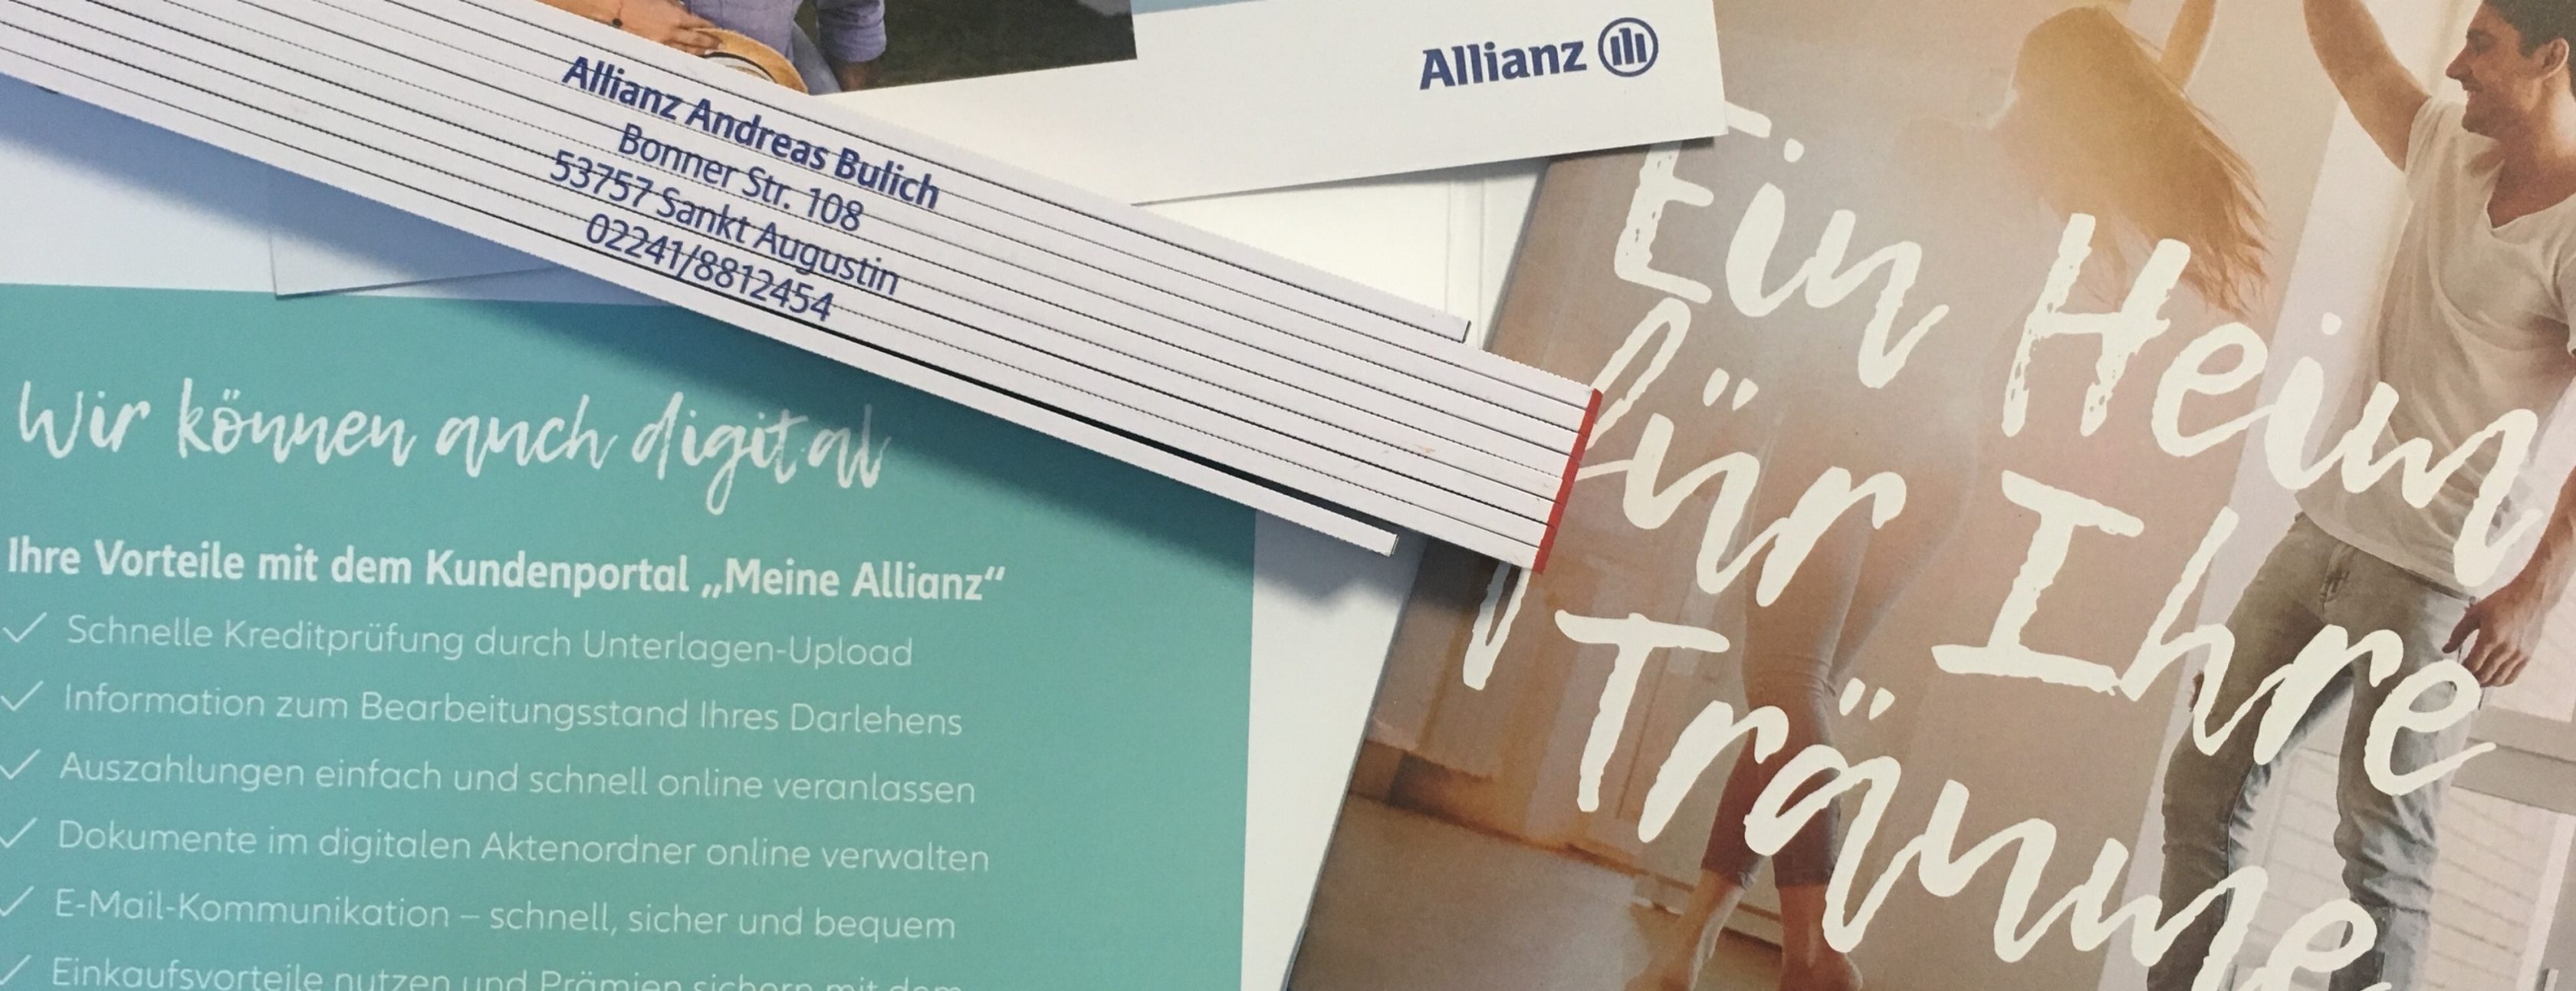 Allianz Versicherung Andreas Bulich Sankt Augustin - Baufinanzierung Top Zins Andreas Bulich